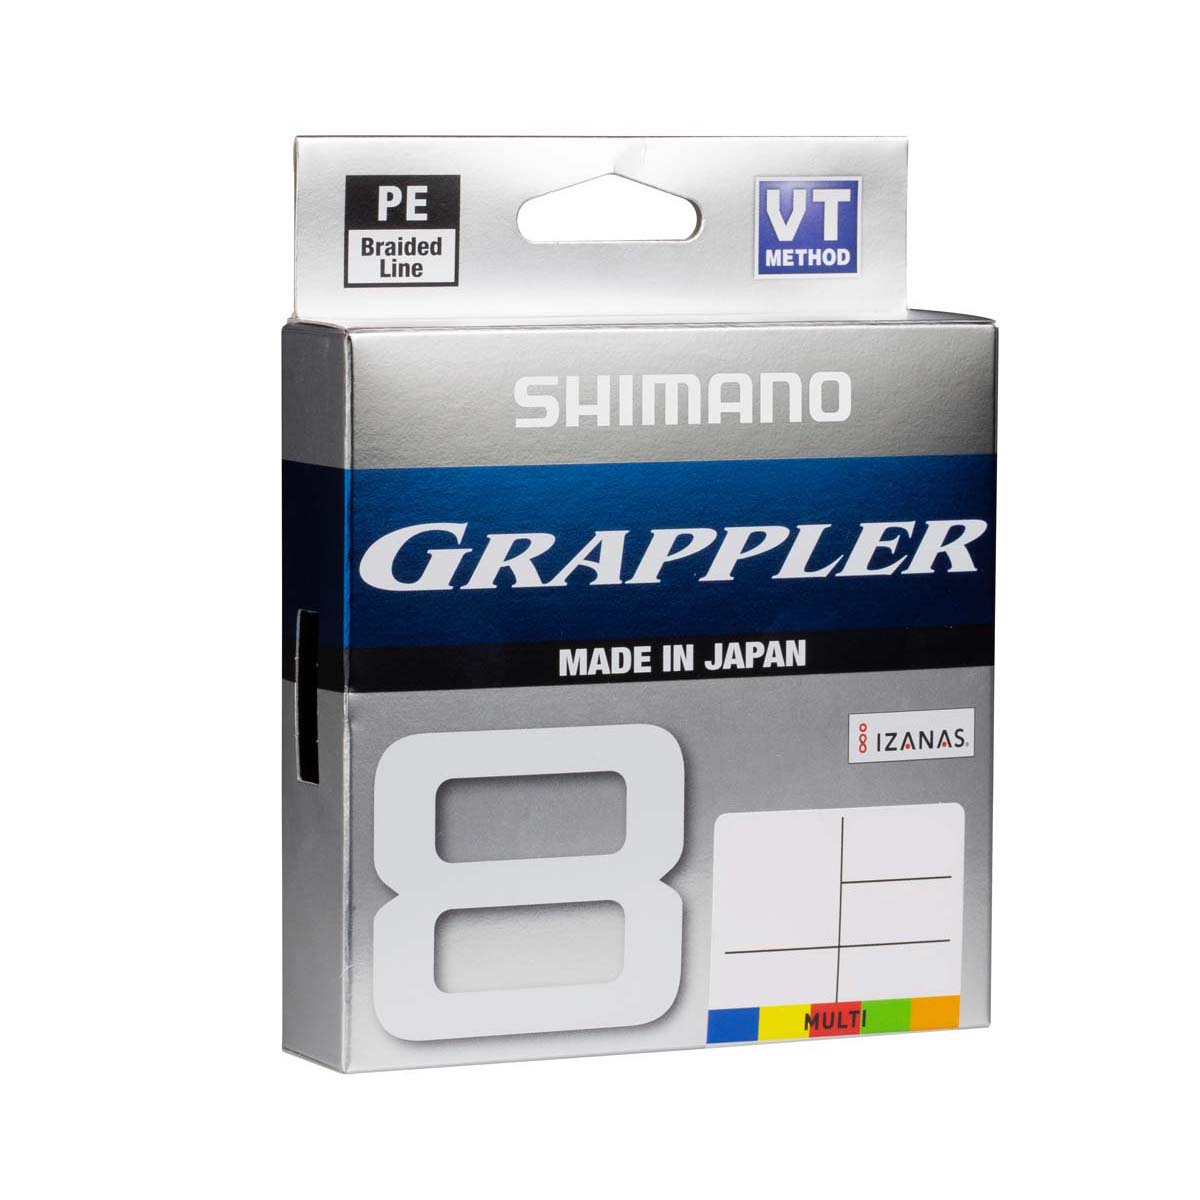 Shimano Grappler 8 Braid Line 300m Multi 134lb